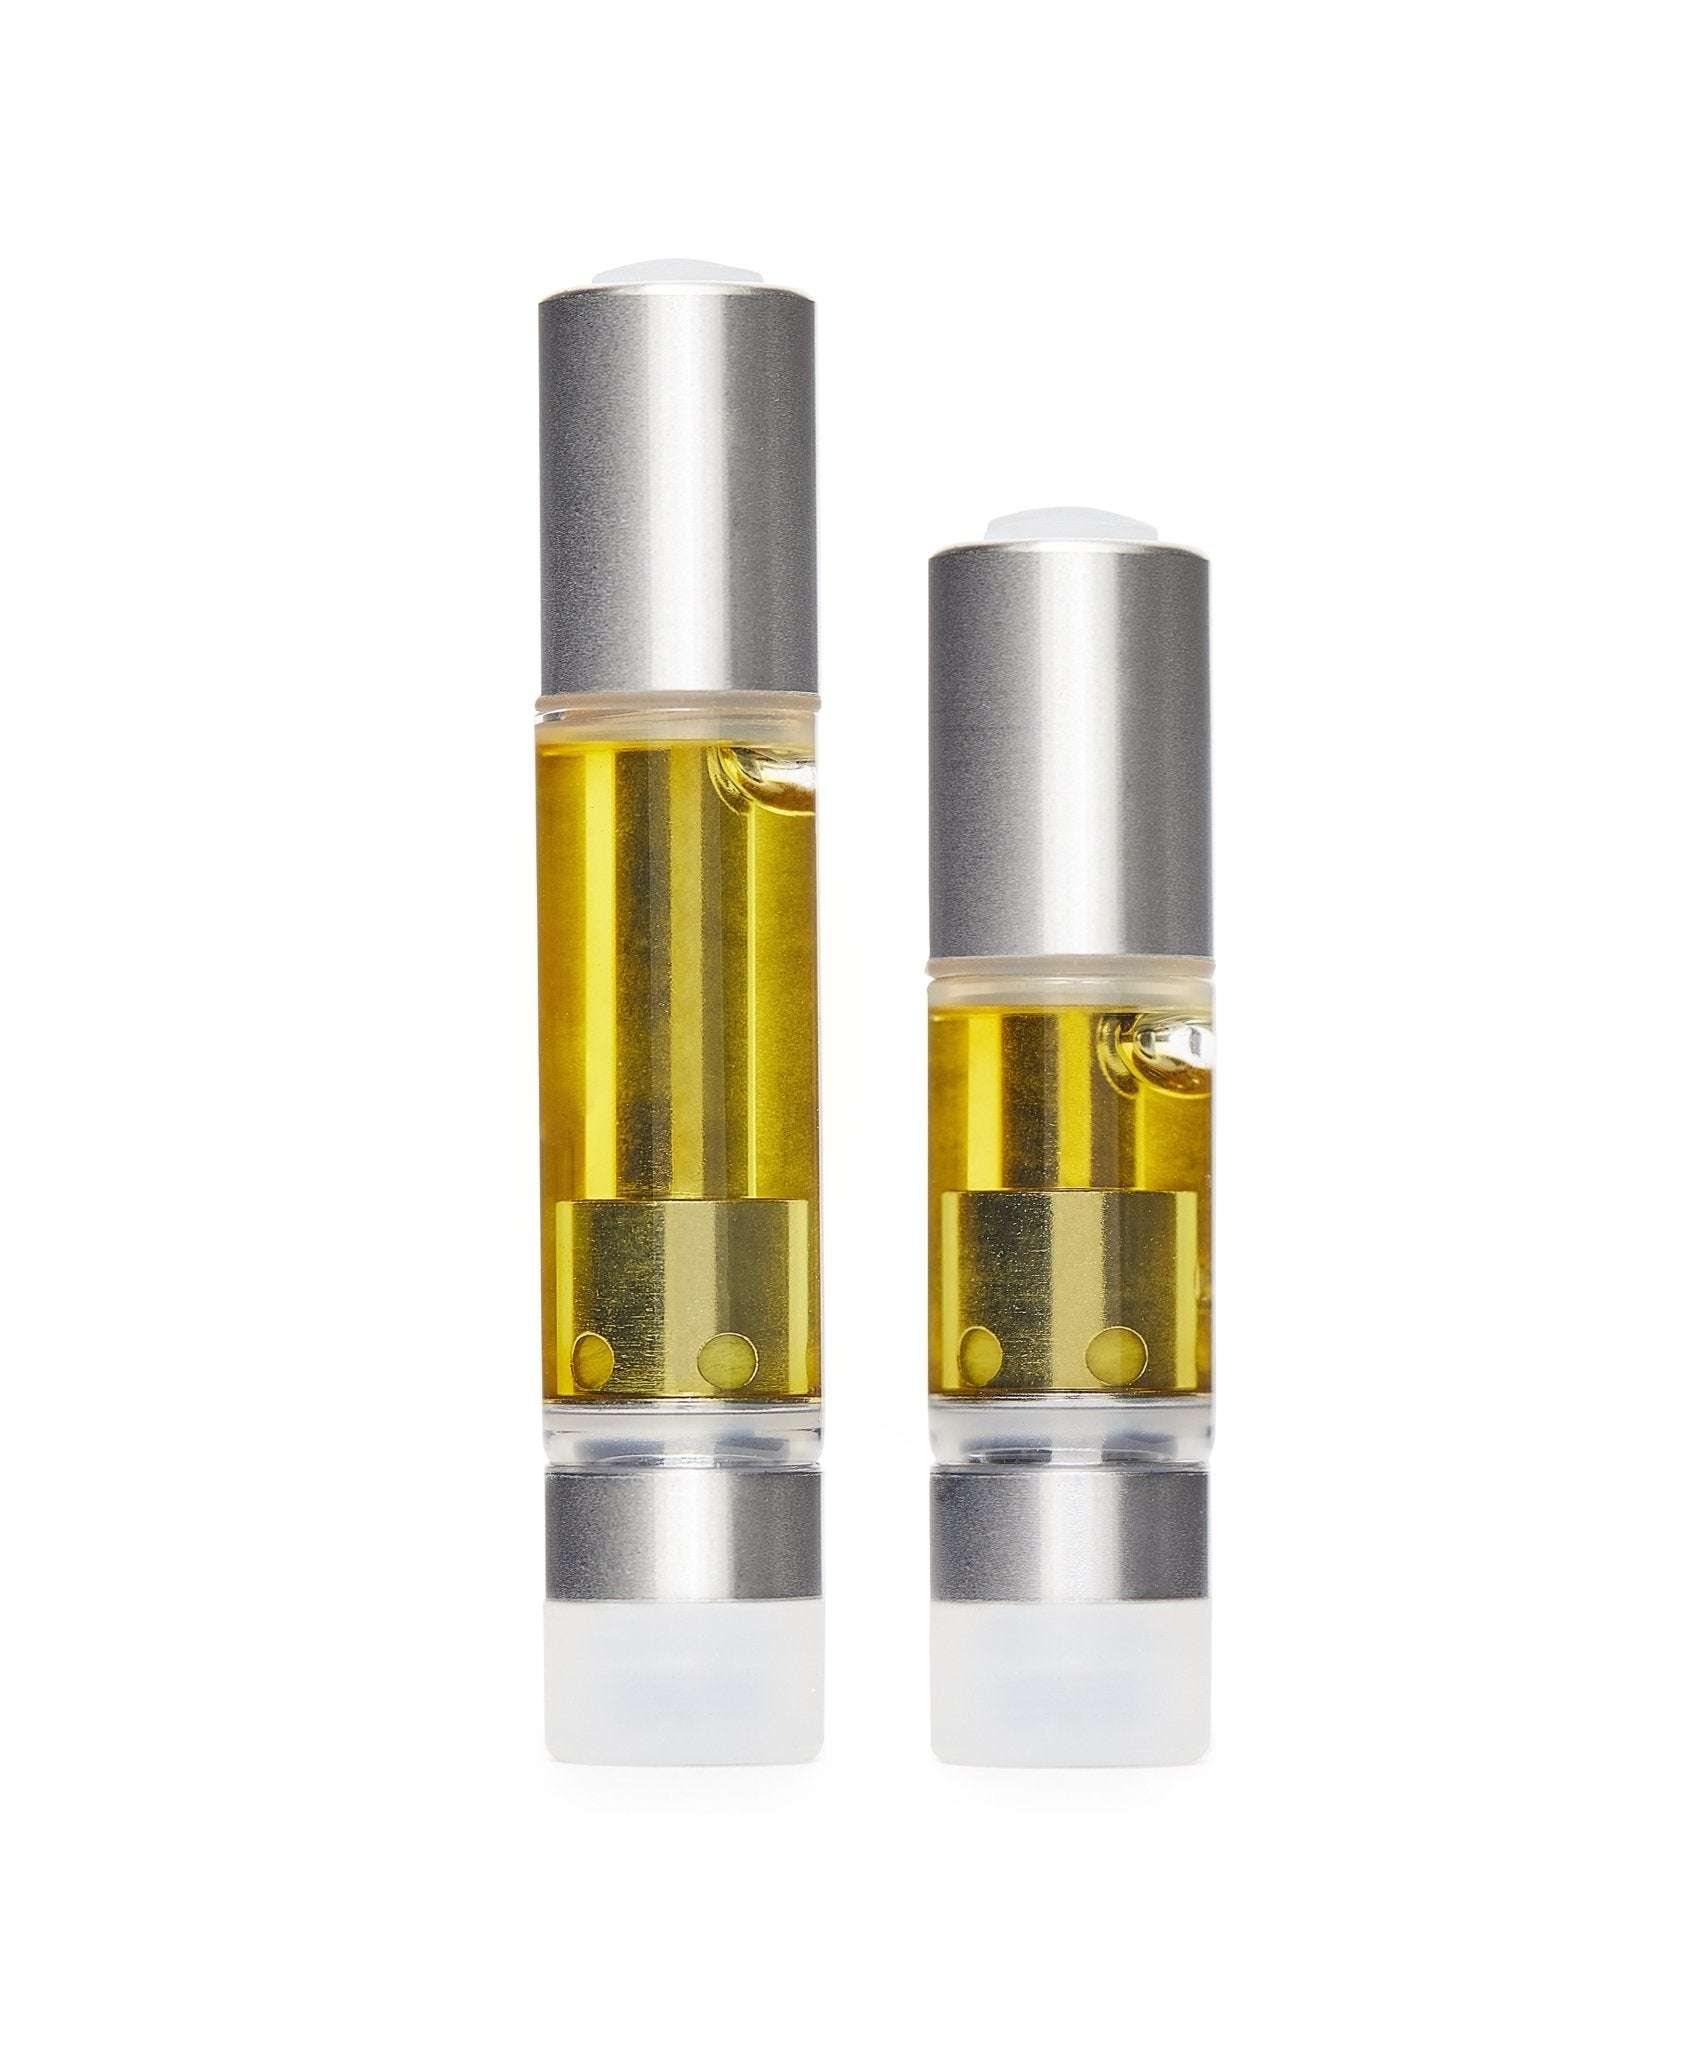 Honey Oil: Gelato THC Vape Cartridge